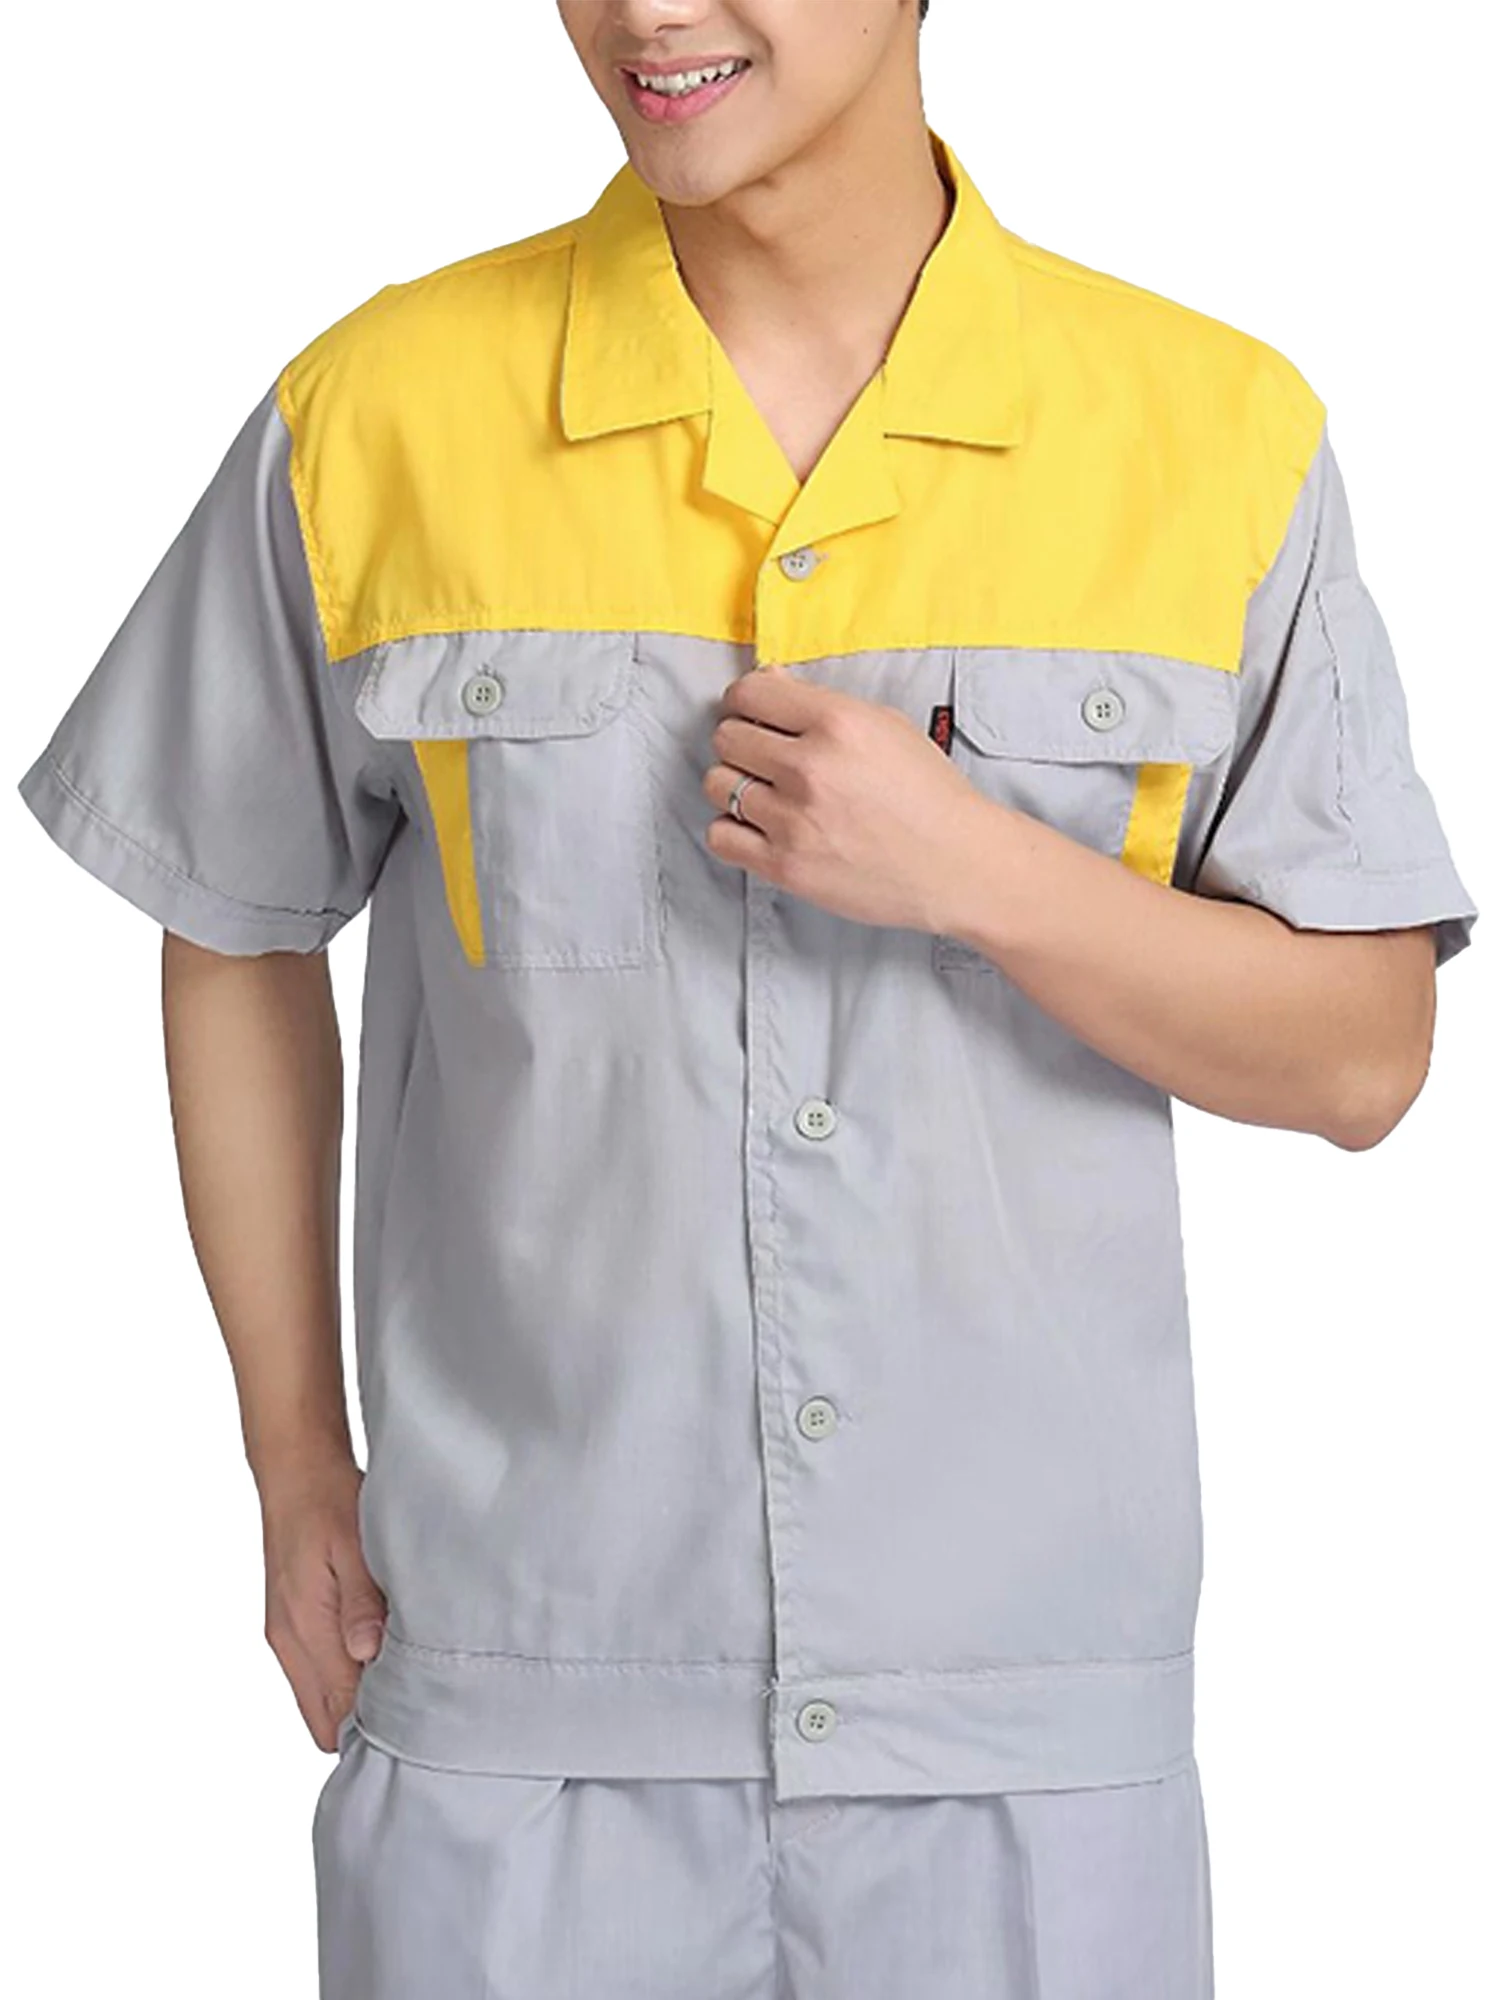 Мужские и женские рубашки для мастерской, Униформа, рабочая одежда с коротким рукавом, рабочая одежда для мастерской, униформа для автомеханика, рубашка с пуговицами